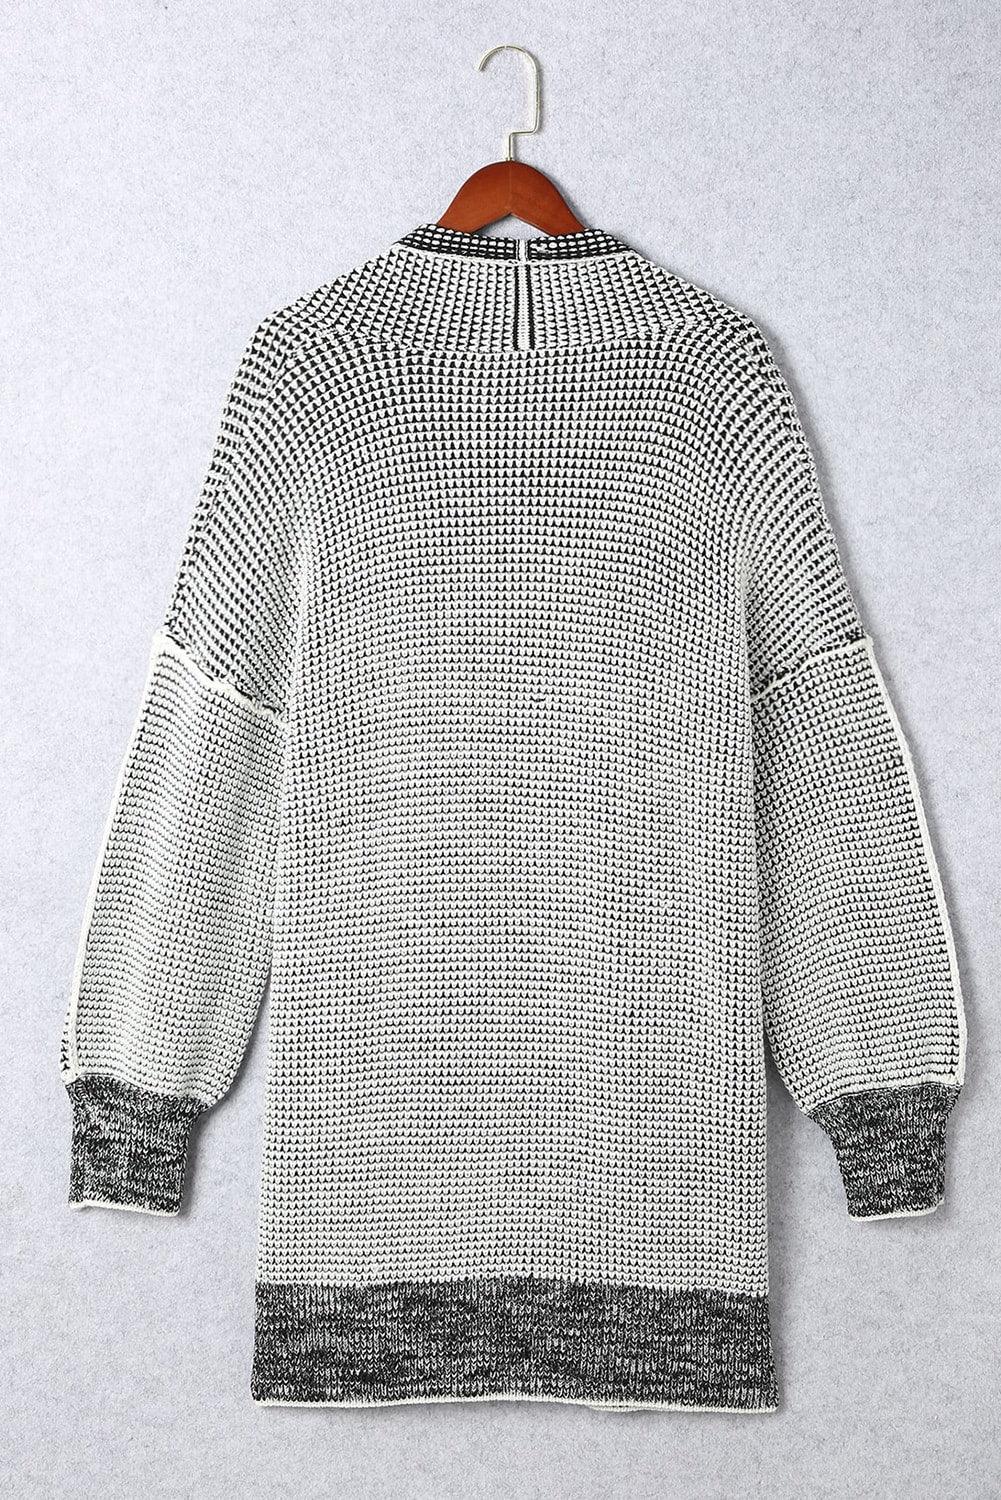 Gray Plus Size Textured Knit Cardigan - L & M Kee, LLC